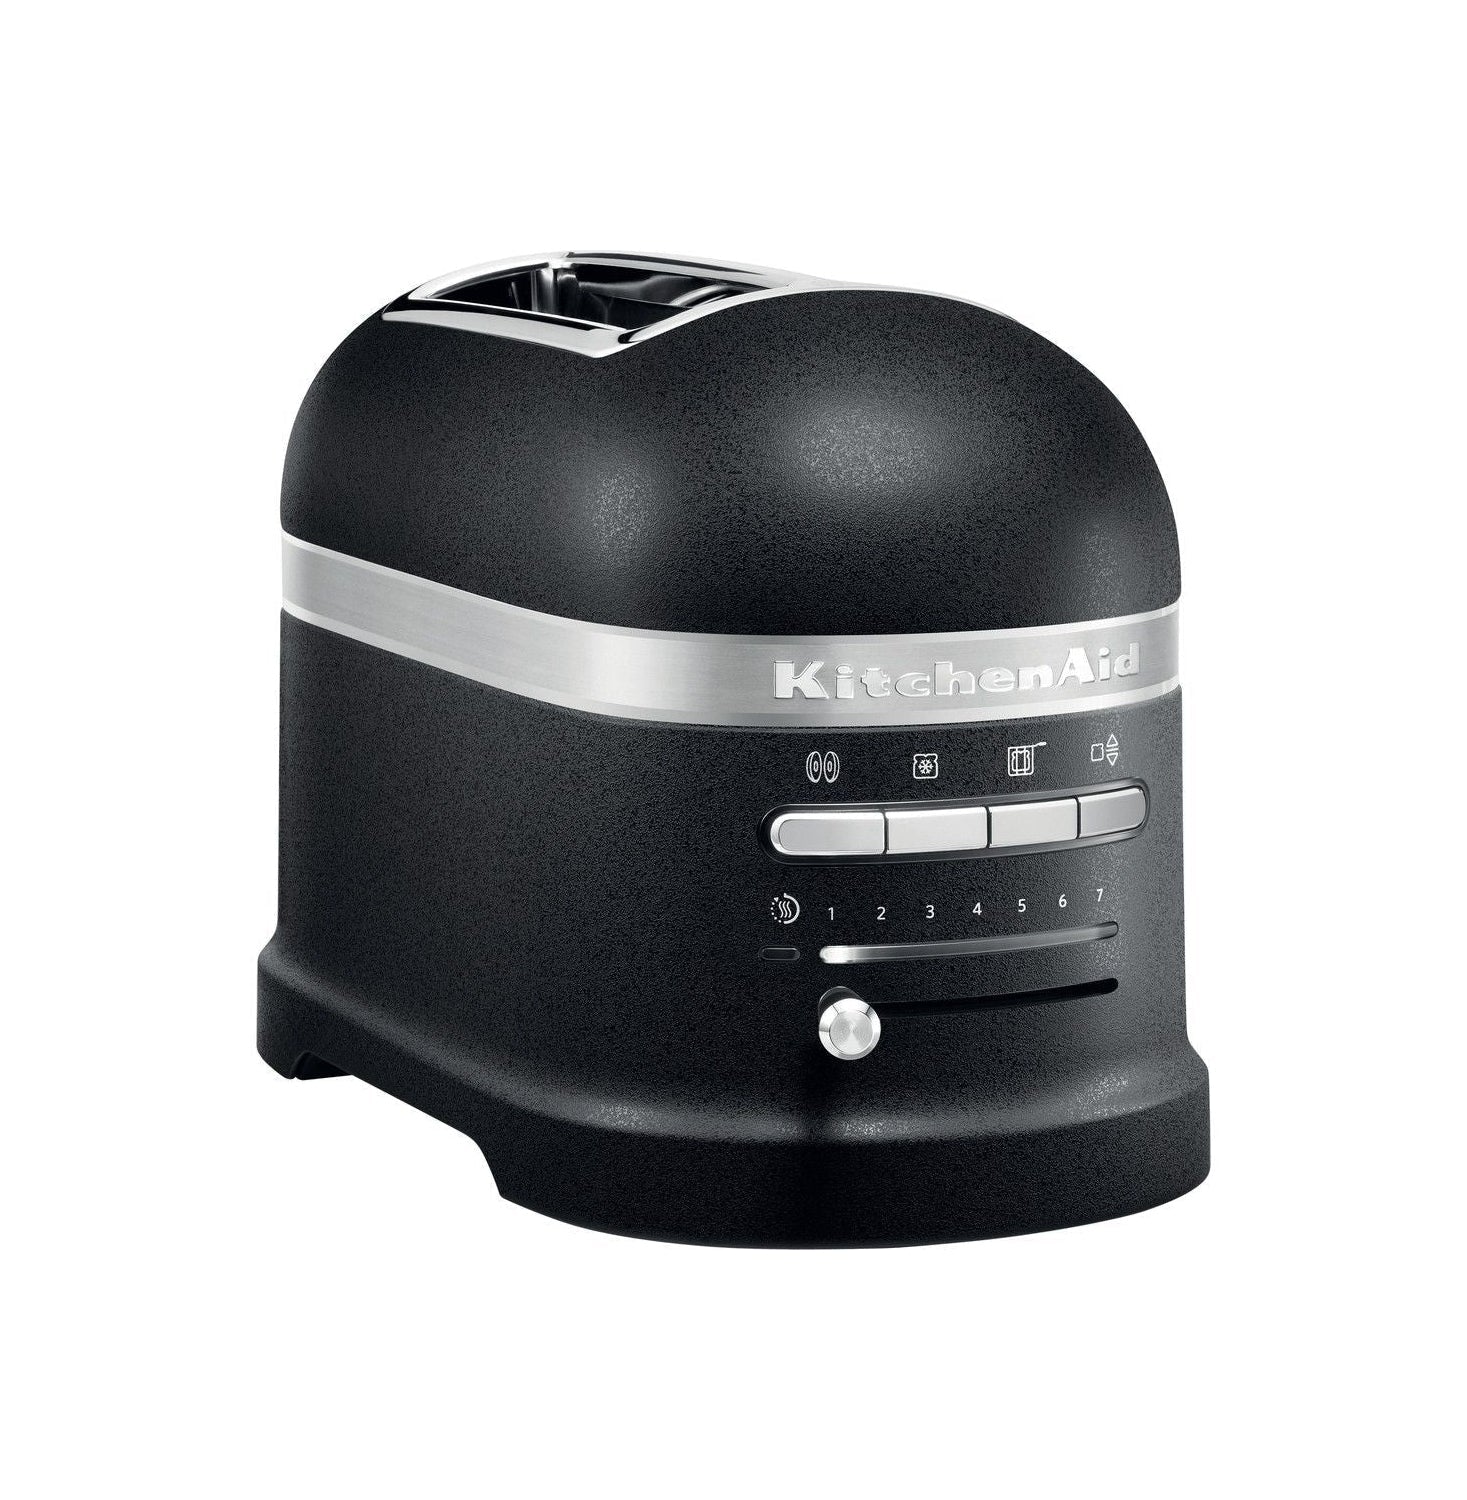 KitchenAid 5KMT2204 Artisan Toaster för 2 skivor, gjutjärnsvart